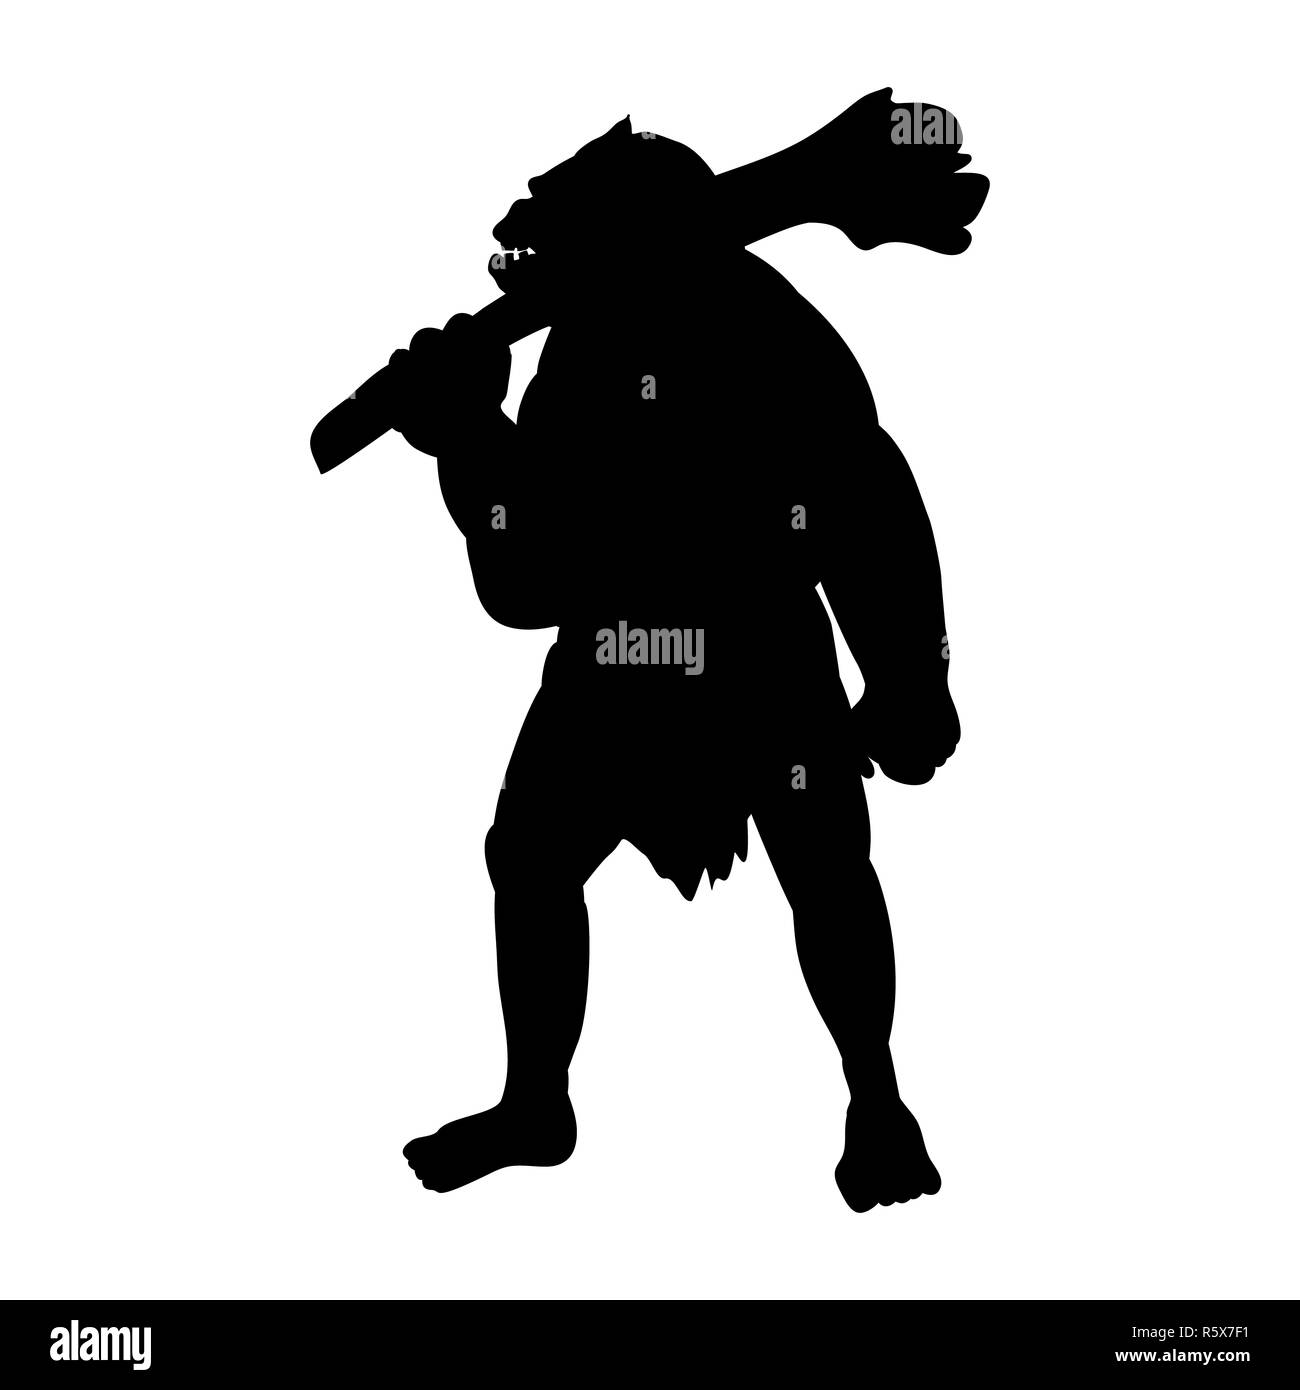 Ogre silhouette monster villain fantasy Stock Photo